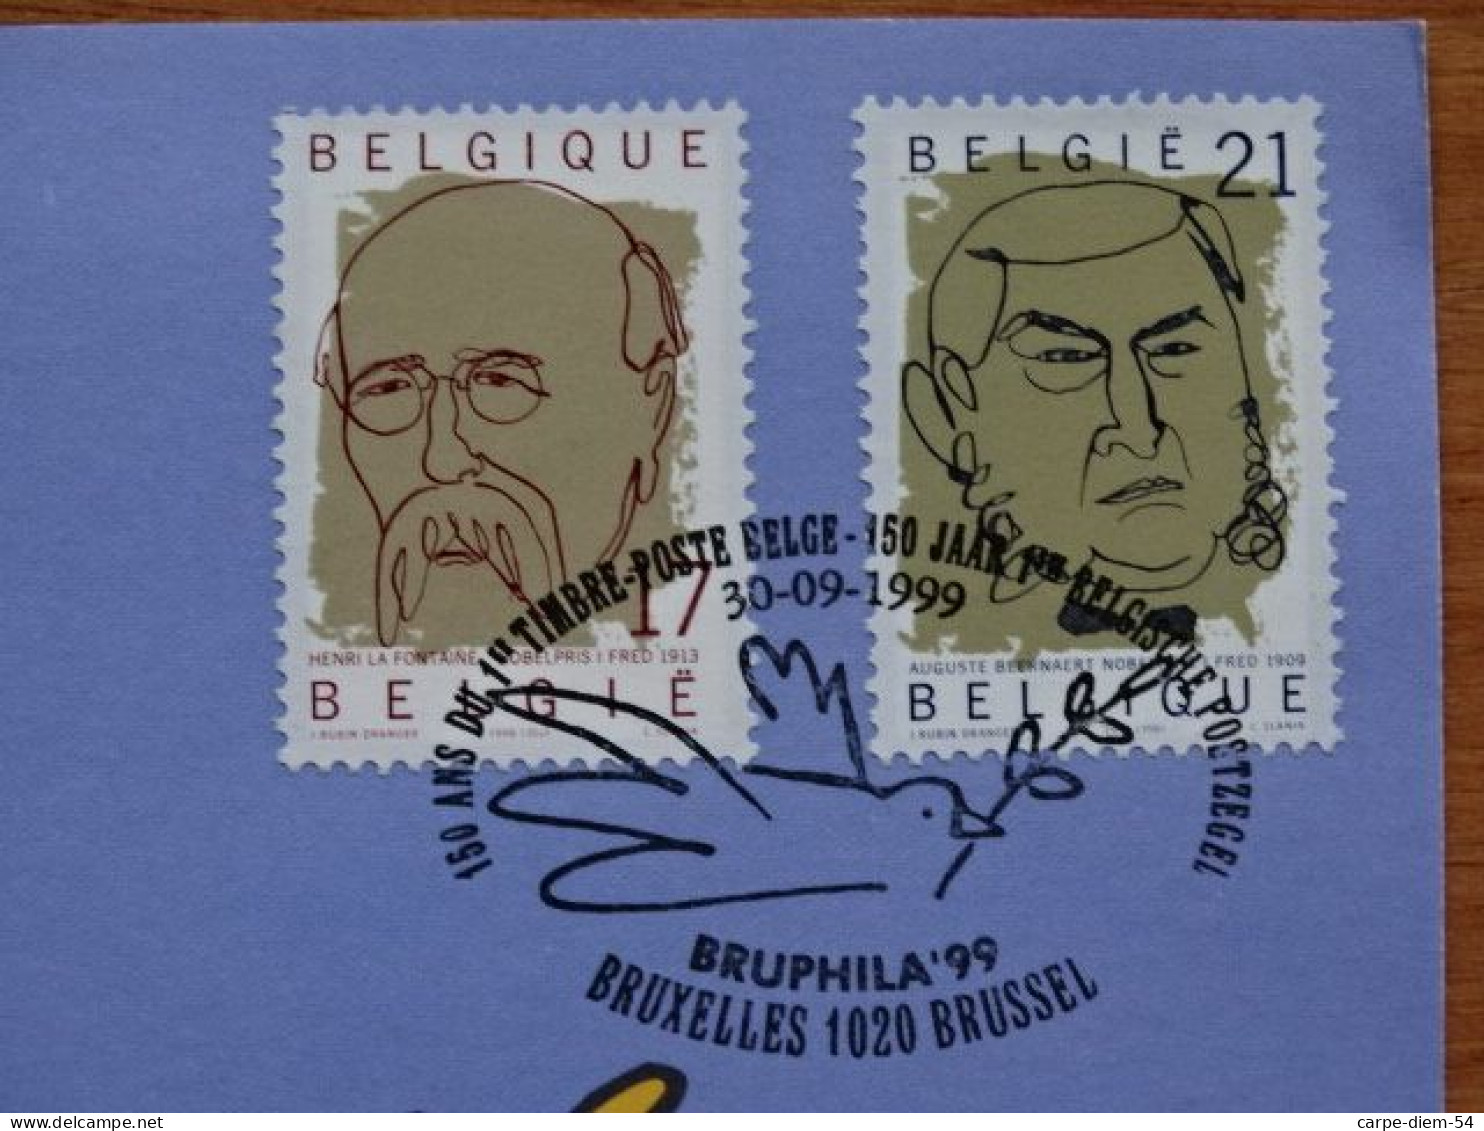 Belgique & Suède - Feuillet De Luxe + 2 Timbres Belgique & Carnet 4 Timbres Suède - Prix Nobel - Bruphila 1999 - Deluxe Sheetlets [LX]